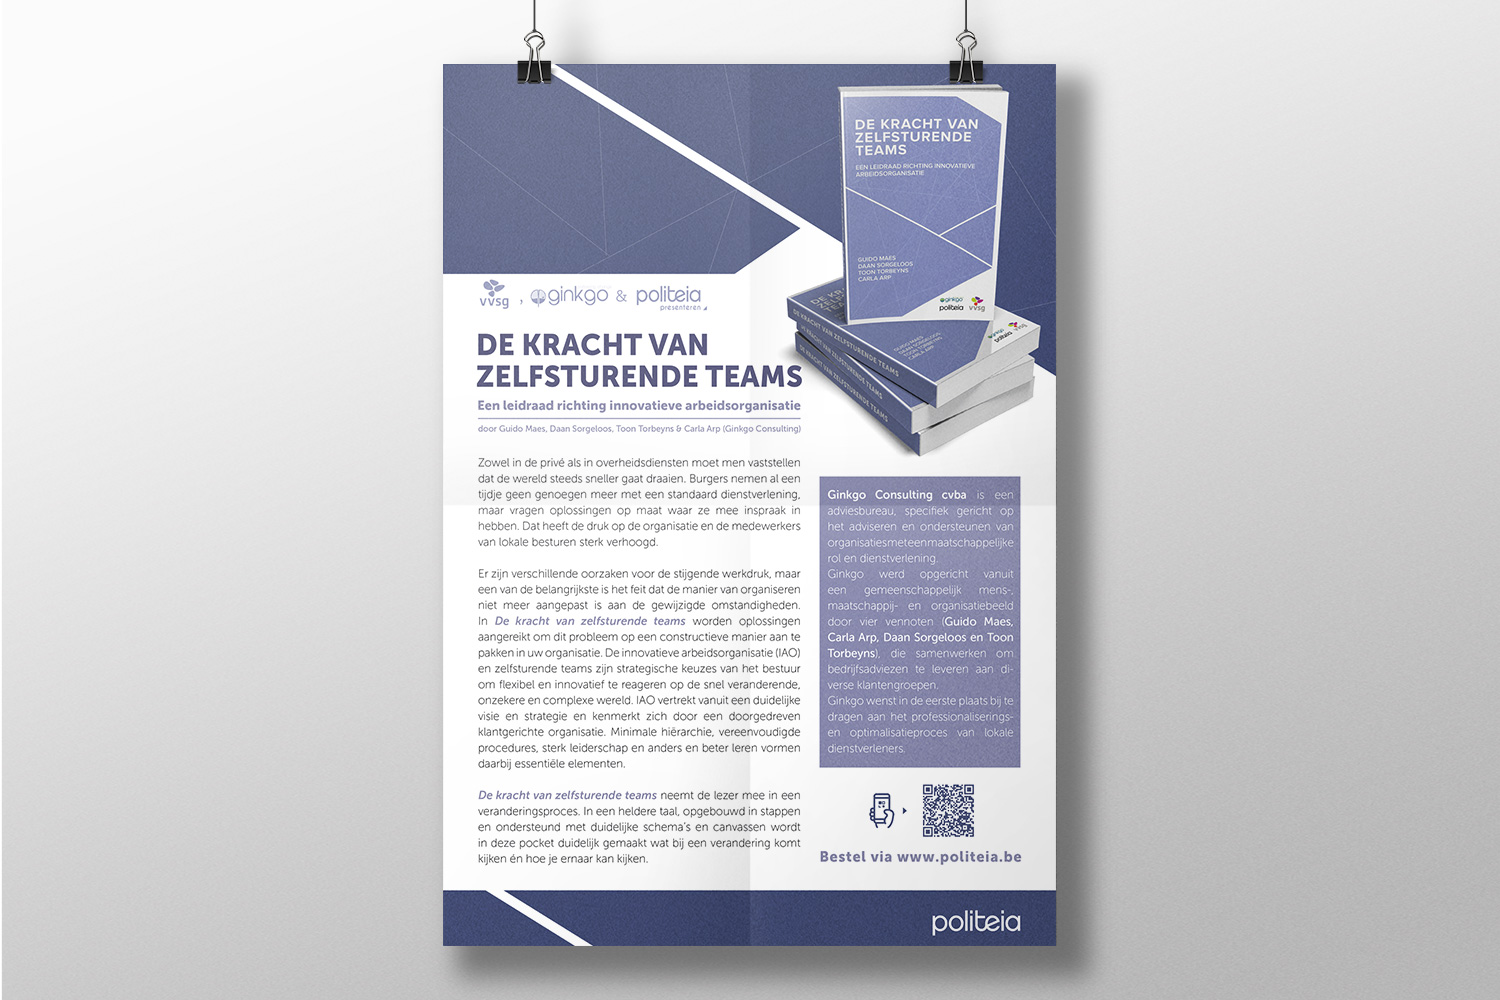 Greyclouds.be - Bert Blondeel | Design for print: Uitgeverij Politeia - add 'Zelfsturende teams'